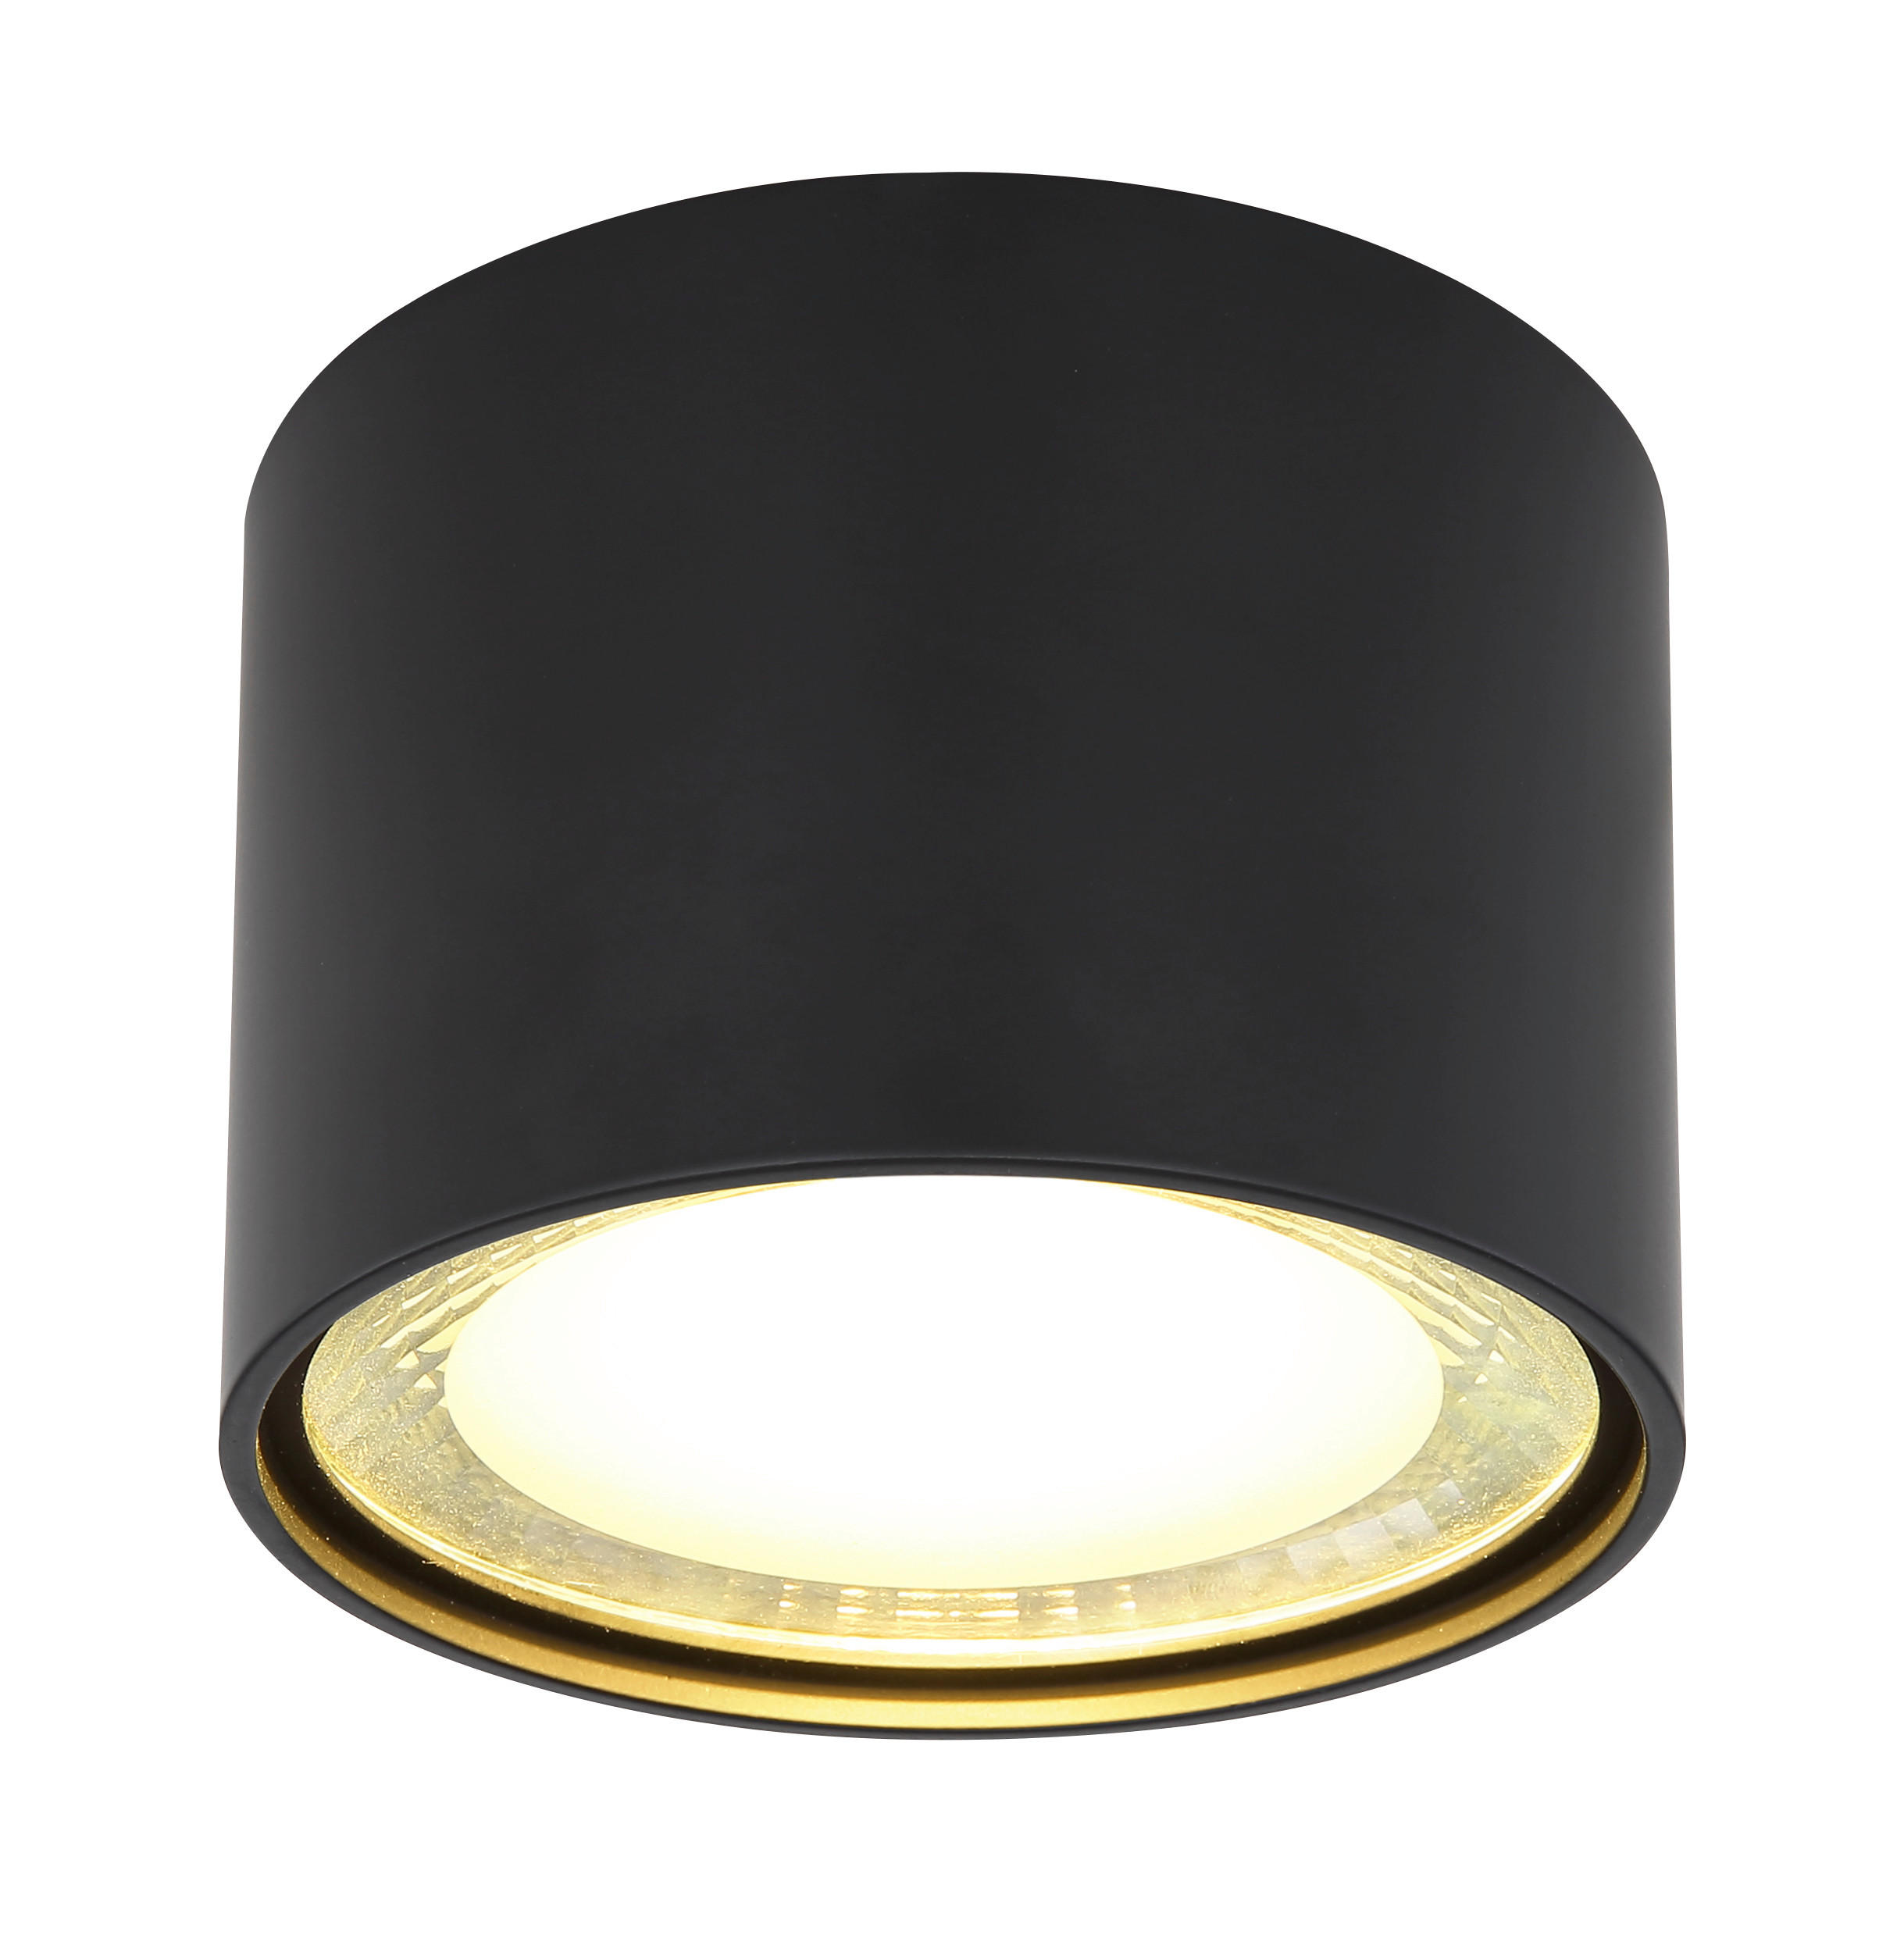 LED-DECKENLEUCHTE SERENA  - Schwarz, Design, Glas/Metall (11,3/8cm) - Globo